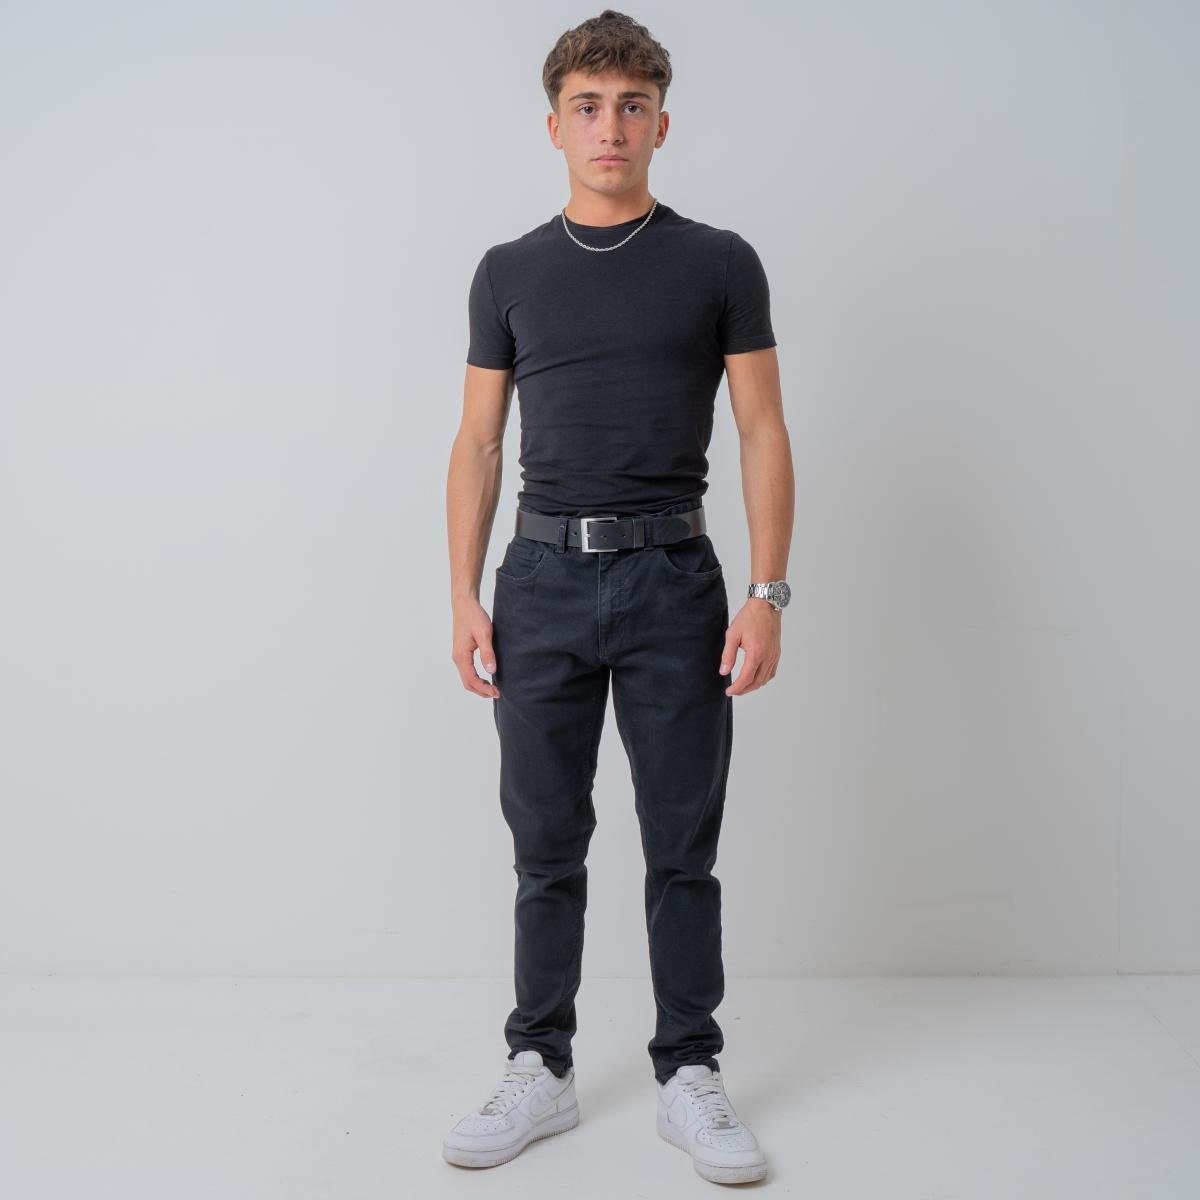 BELTINGER Ledergürtel Jeans-Gürtel cm Dunkelgrau, aus 4 für Vollrindleder Silber Leder-Gürtel - He Hochwertiger